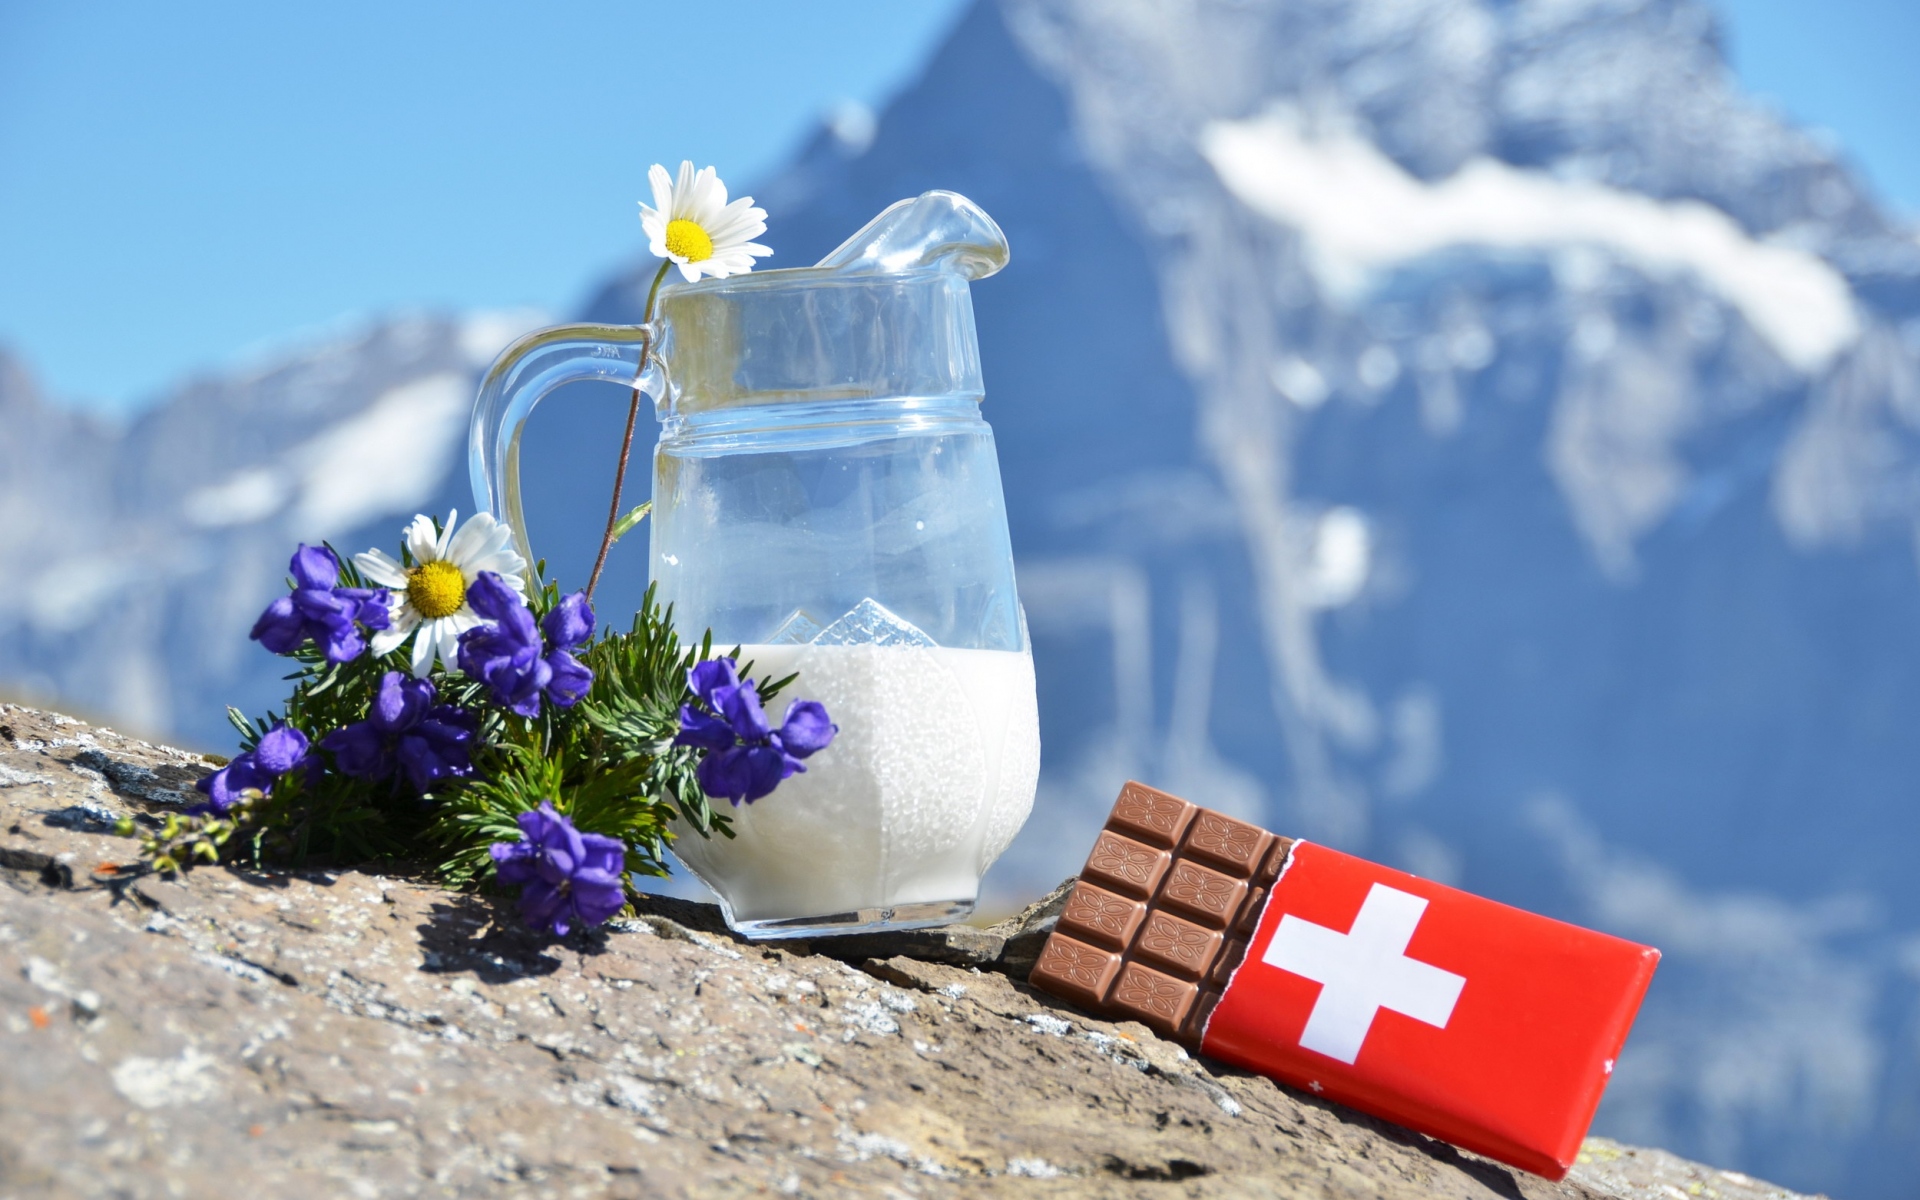 Картинки Шоколад, молоко, швейцария, горы, цветы фото и обои на рабочий стол